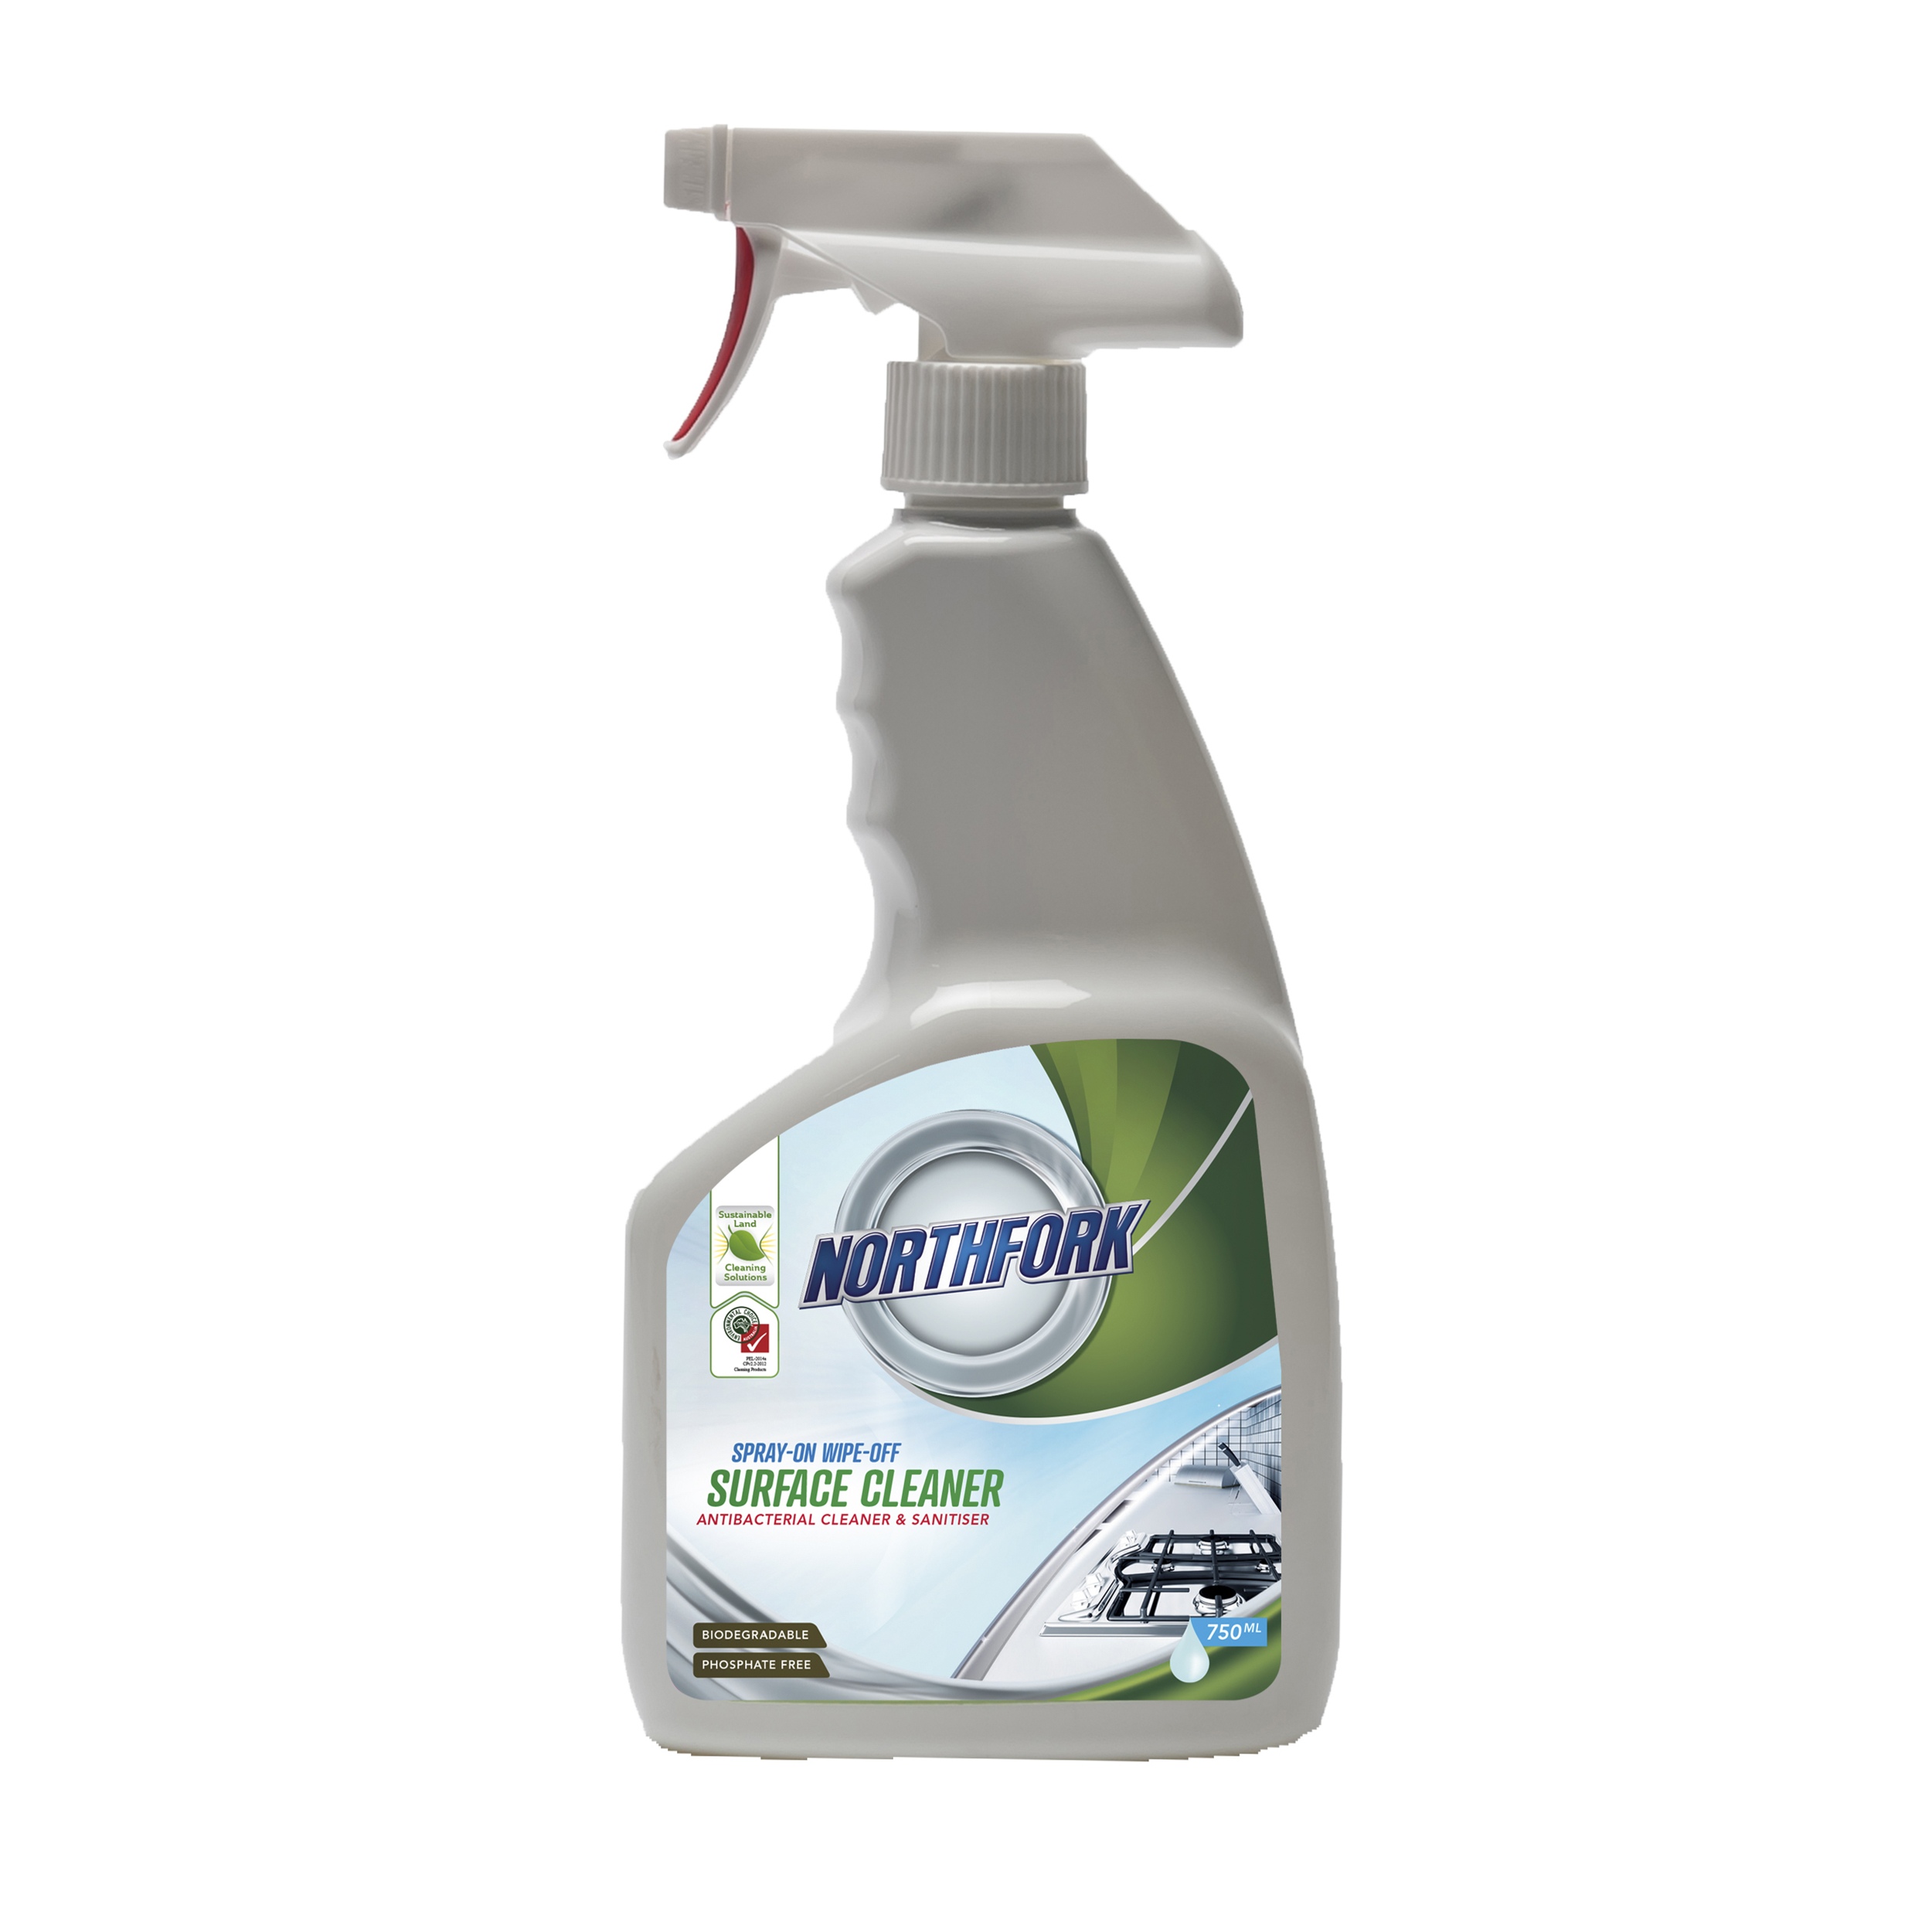 Northfork GECA Spray on Wipe Off Cleaner Spray Bottle